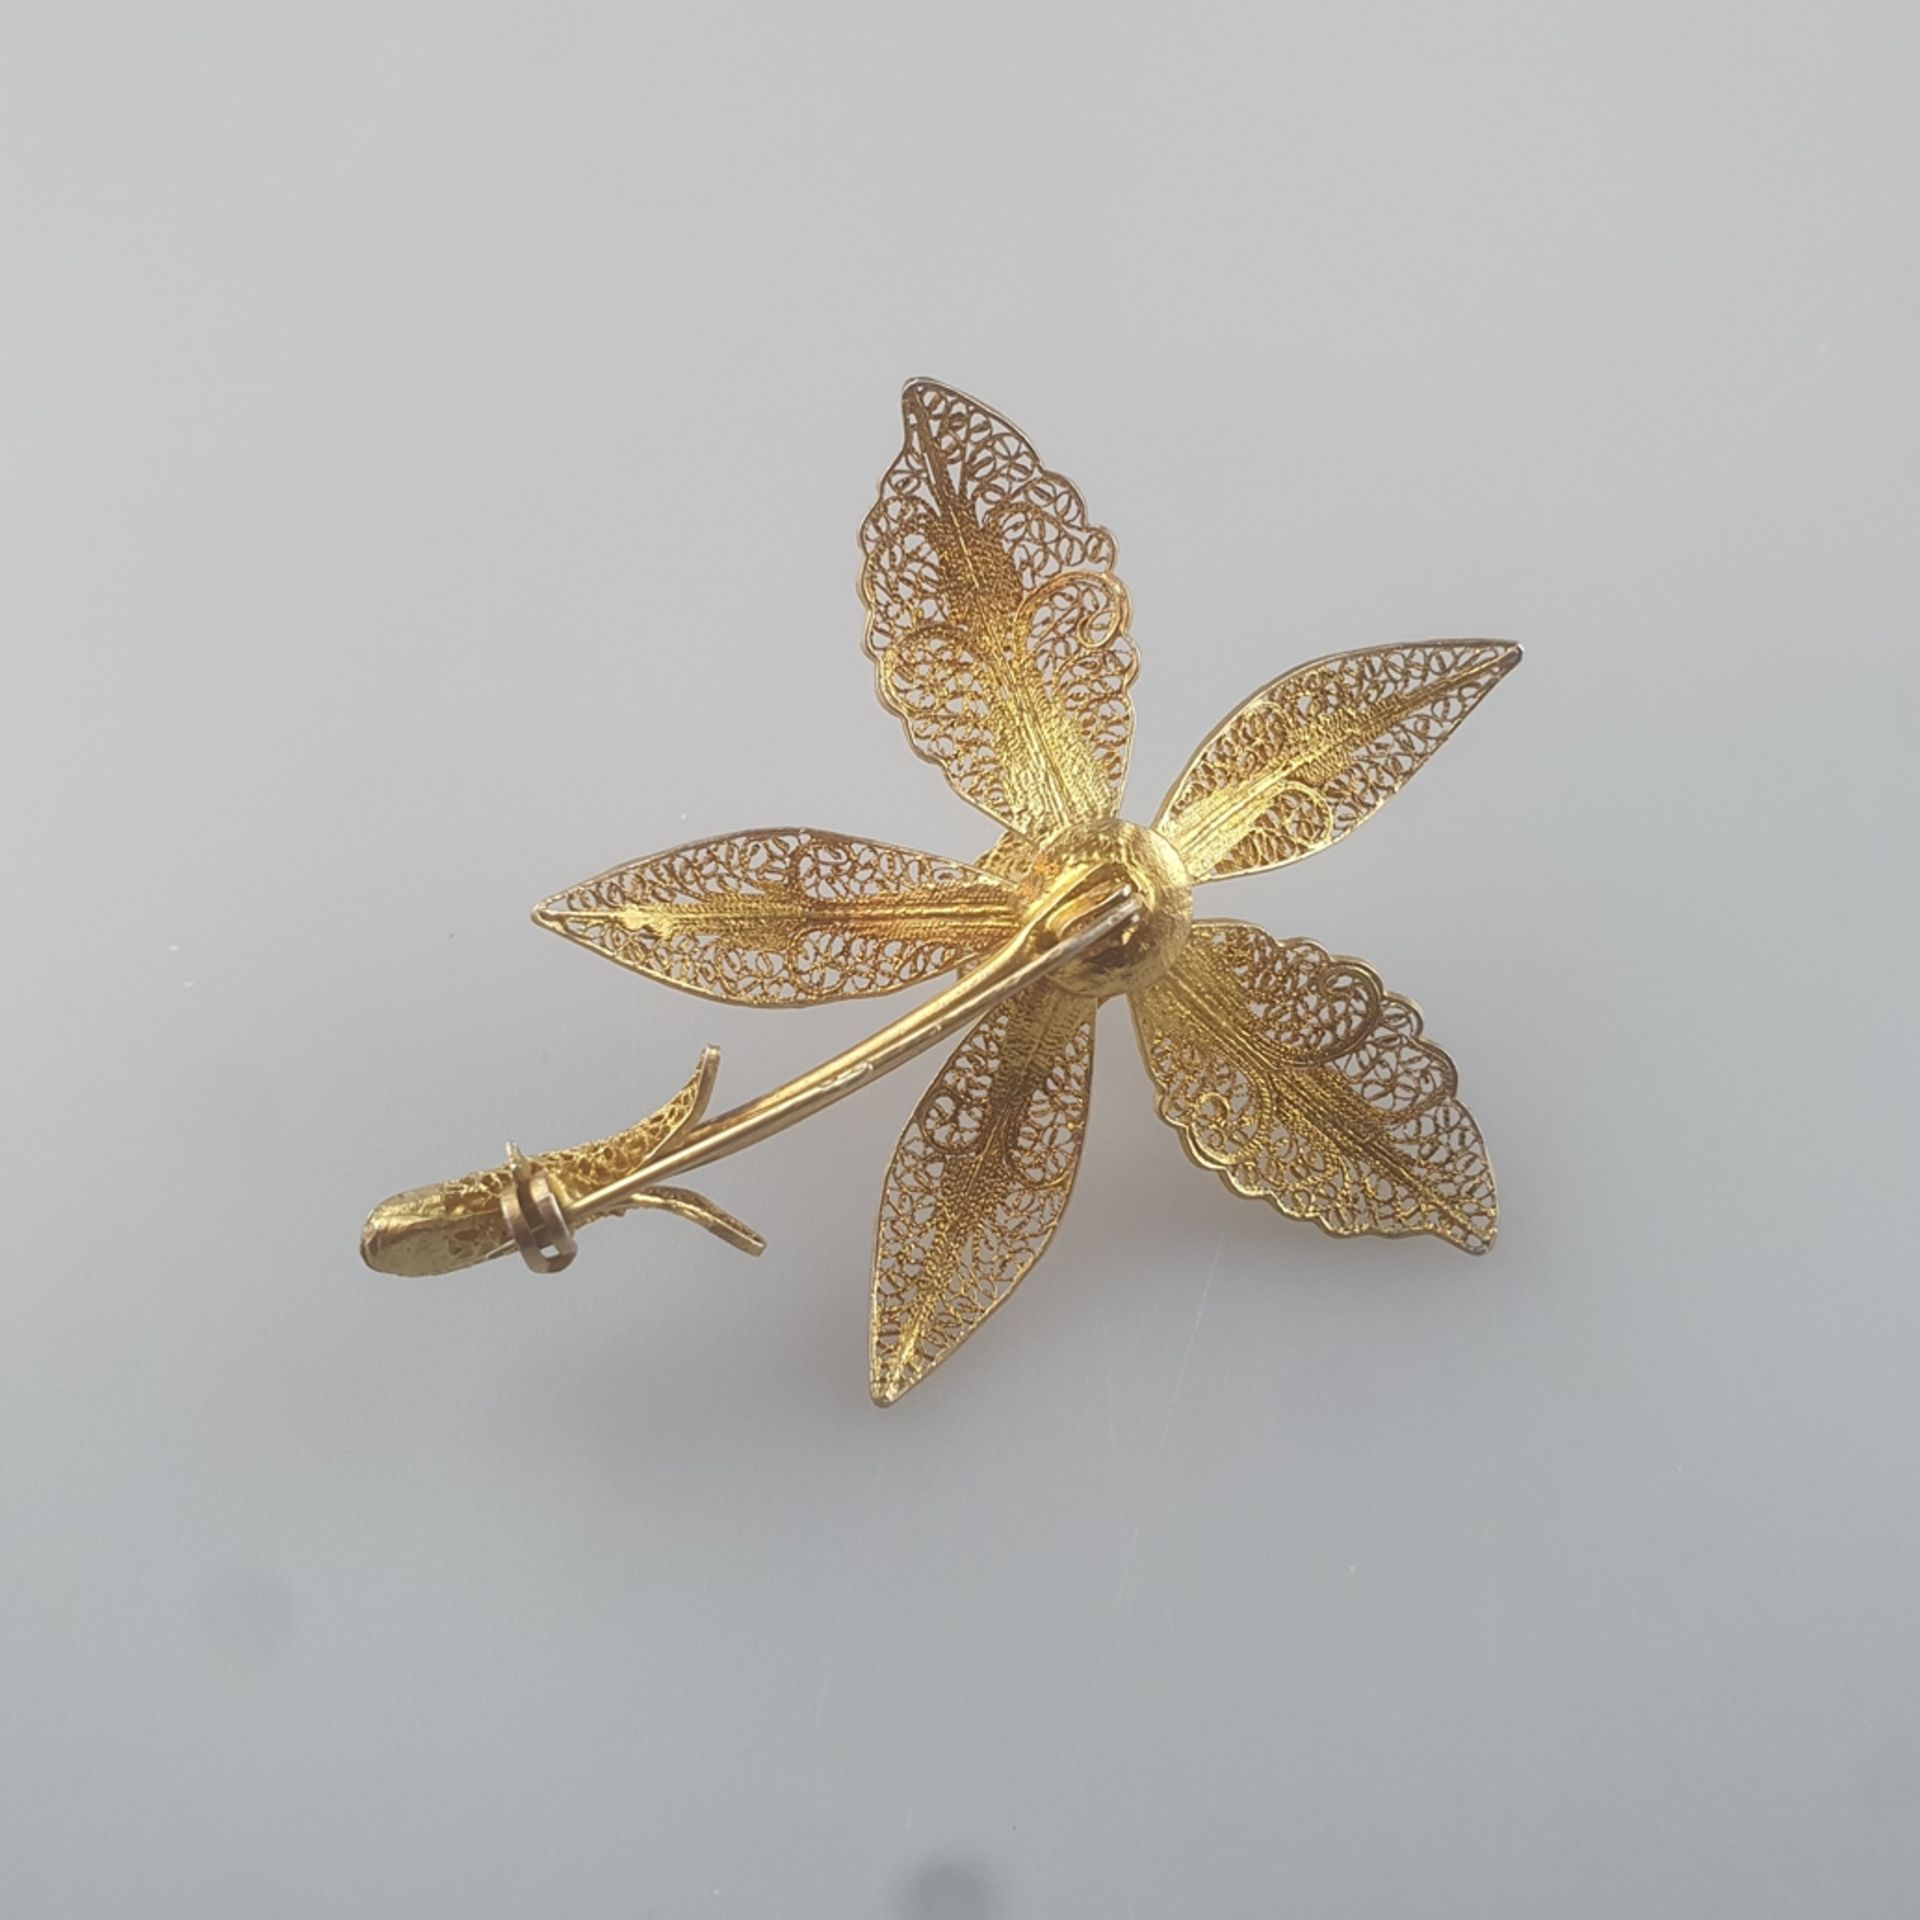 Blütenbrosche - Filigranarbeit aus Silberdraht, vergoldet, gesicherte Nadelung, Maße 6,9 x 5,5 cm,  - Bild 4 aus 4